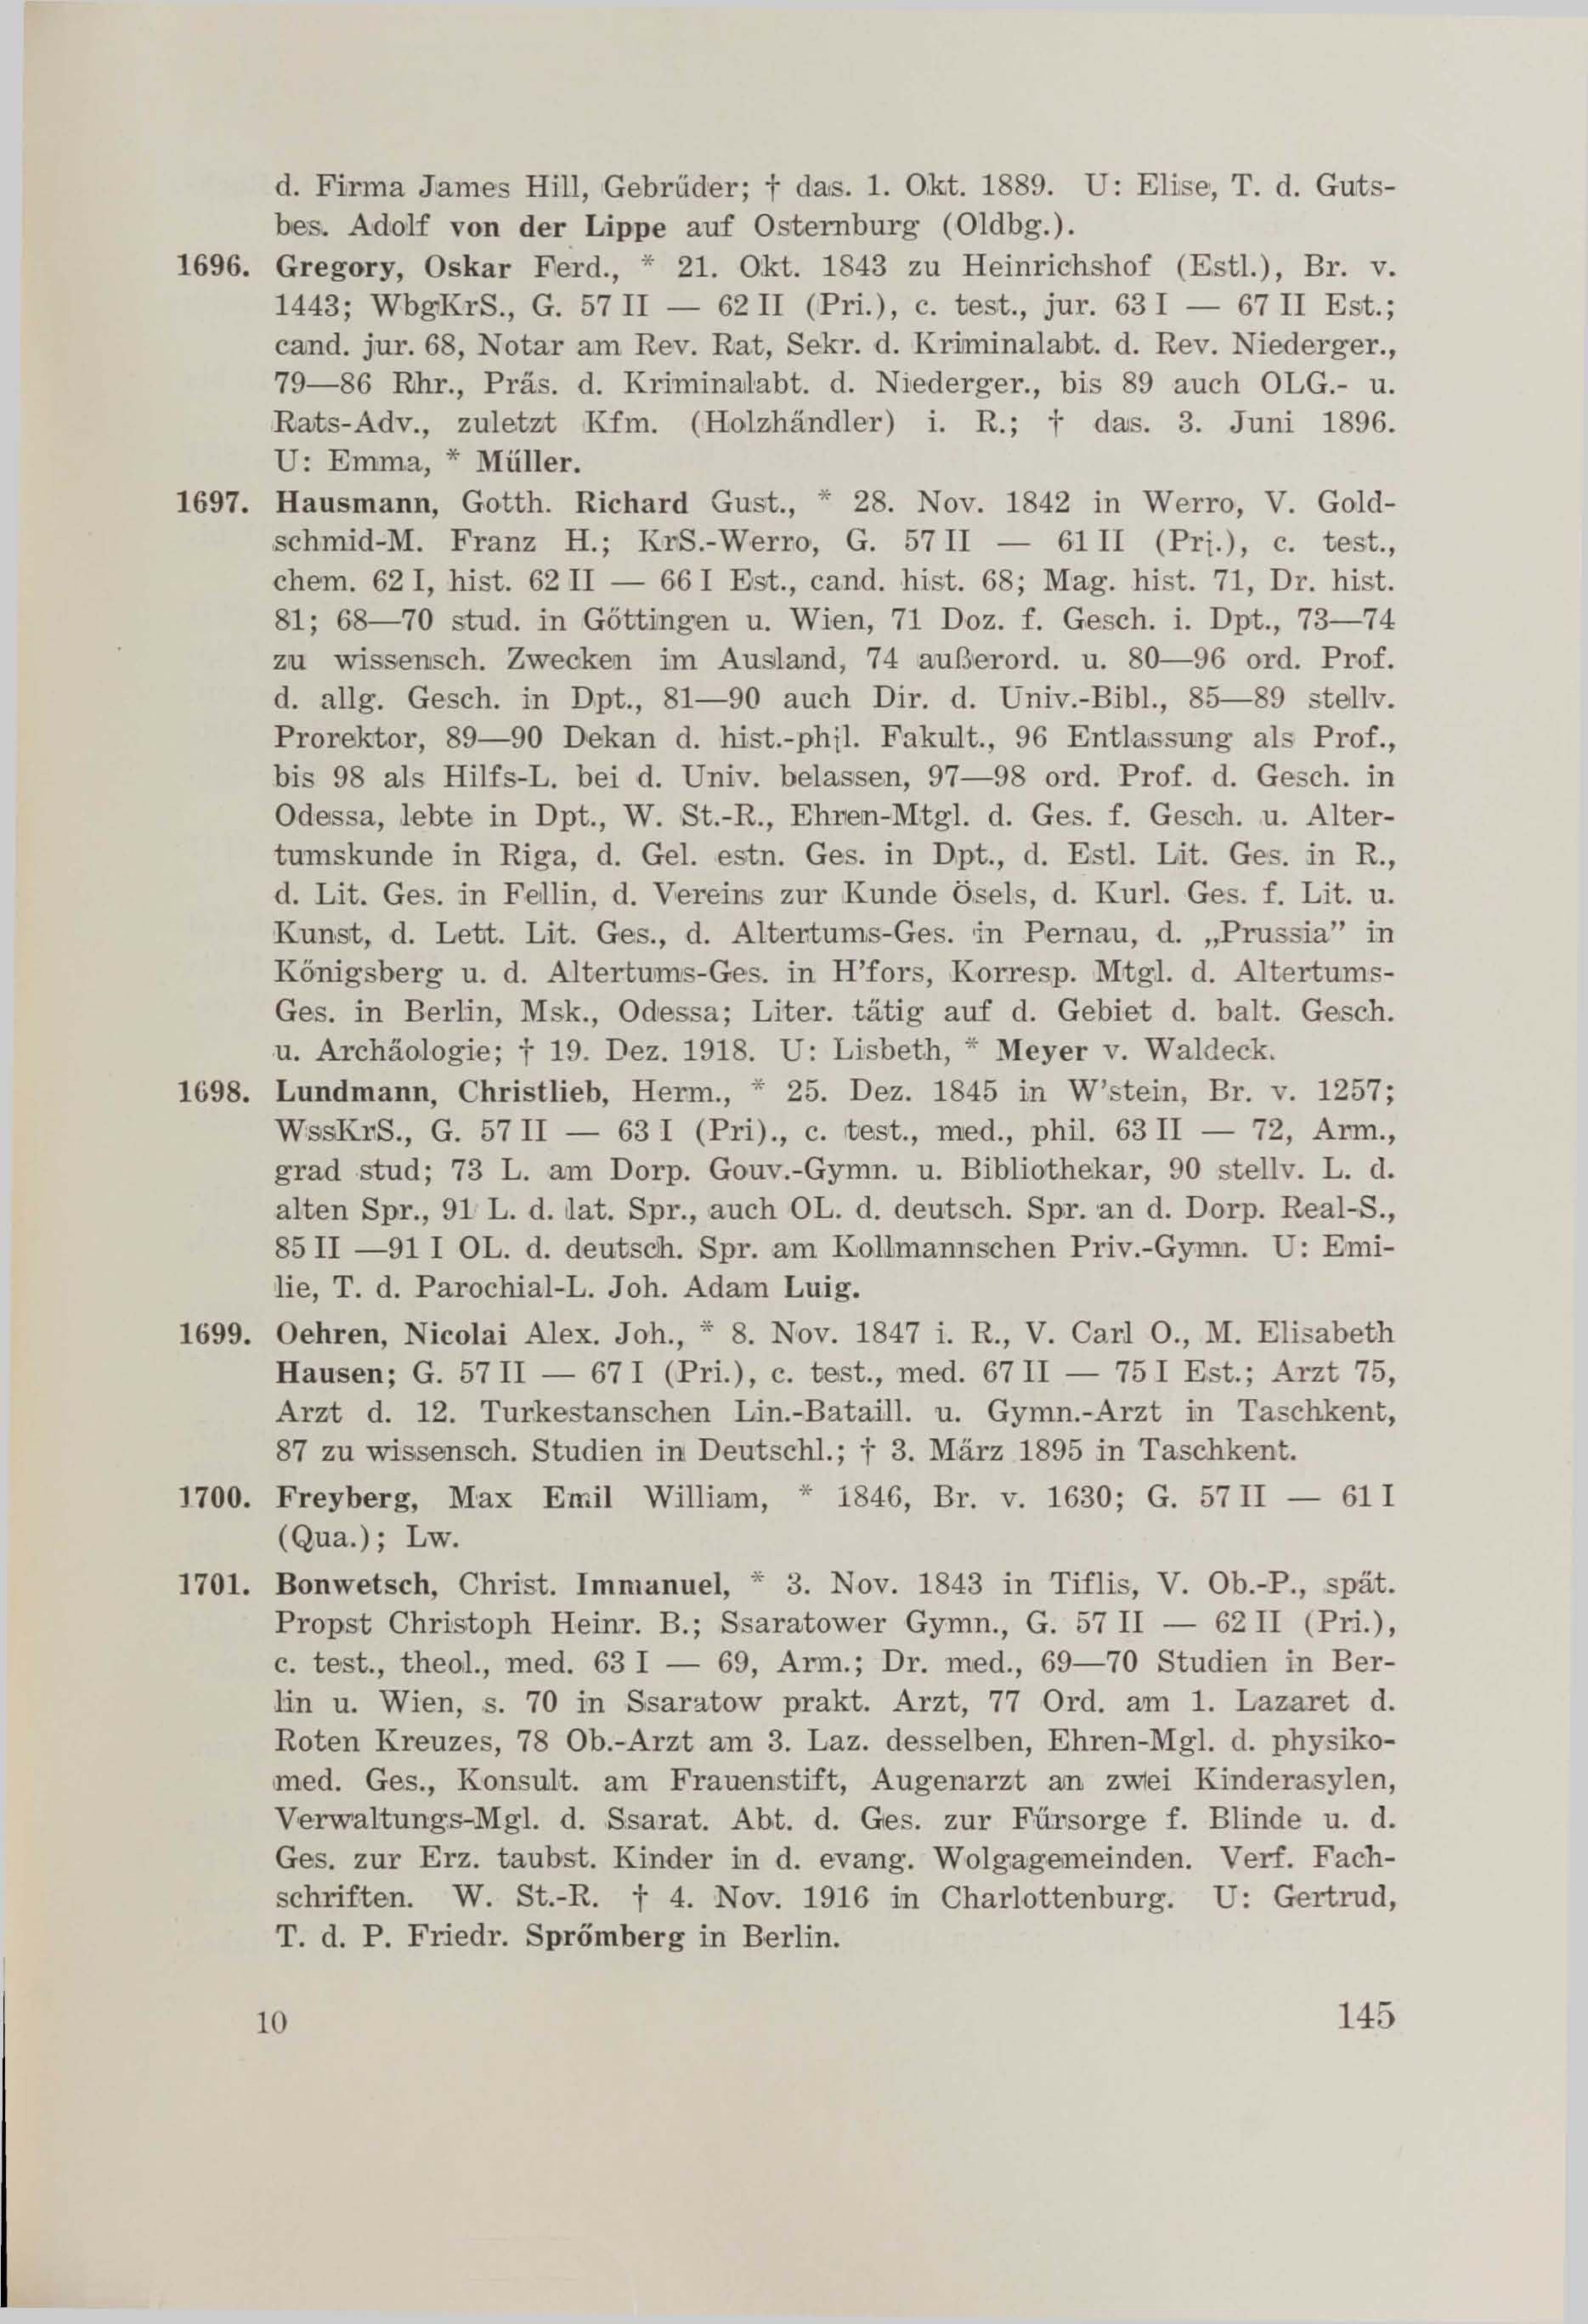 Schüler-Verzeichnis des Revalschen Gouvernements-Gymnasiums 1805–1890 (1931) | 155. (145) Main body of text